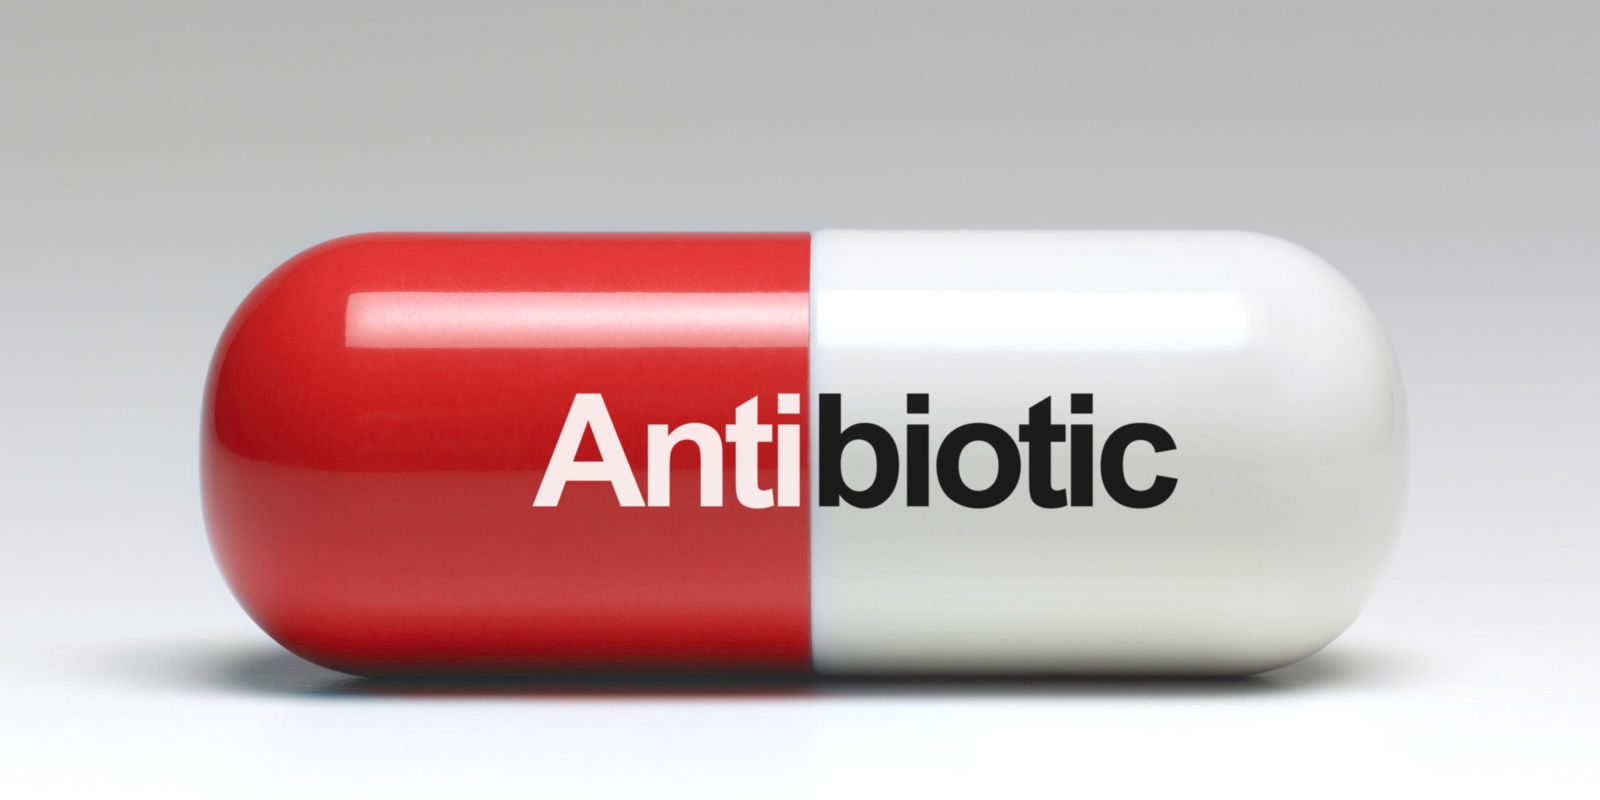 استفاده از آنتی بیوتیک ها در عفونت های ویروسی کاربردی ندارد